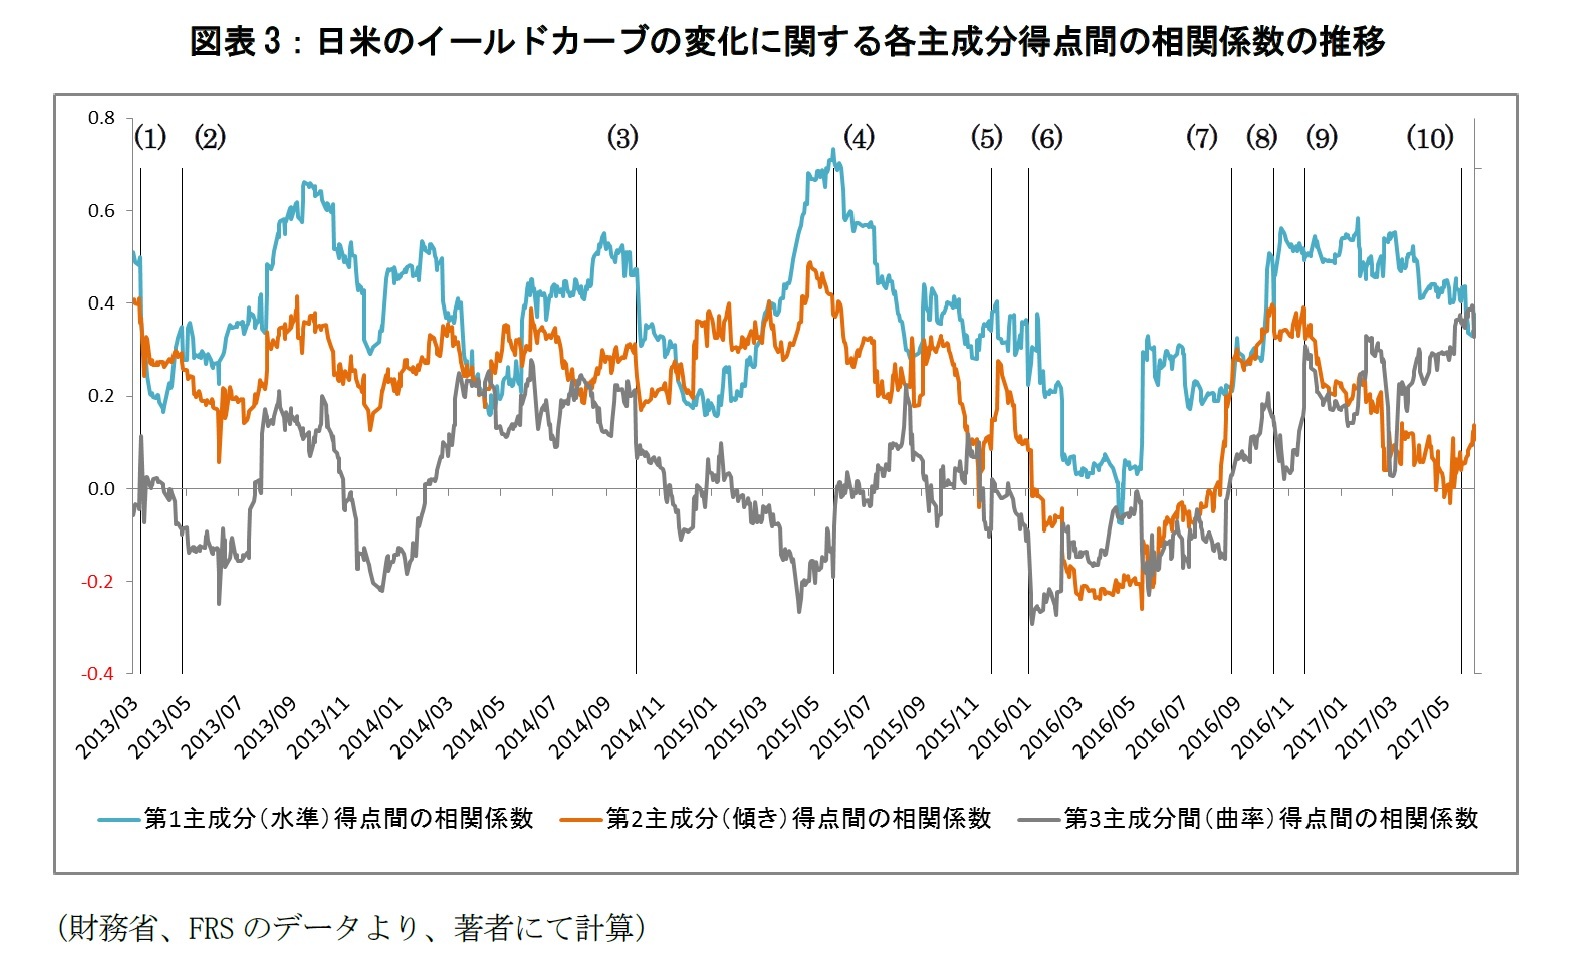 図表3：日米のイールドカーブの変化に関する各主成分得点間の相関係数の推移